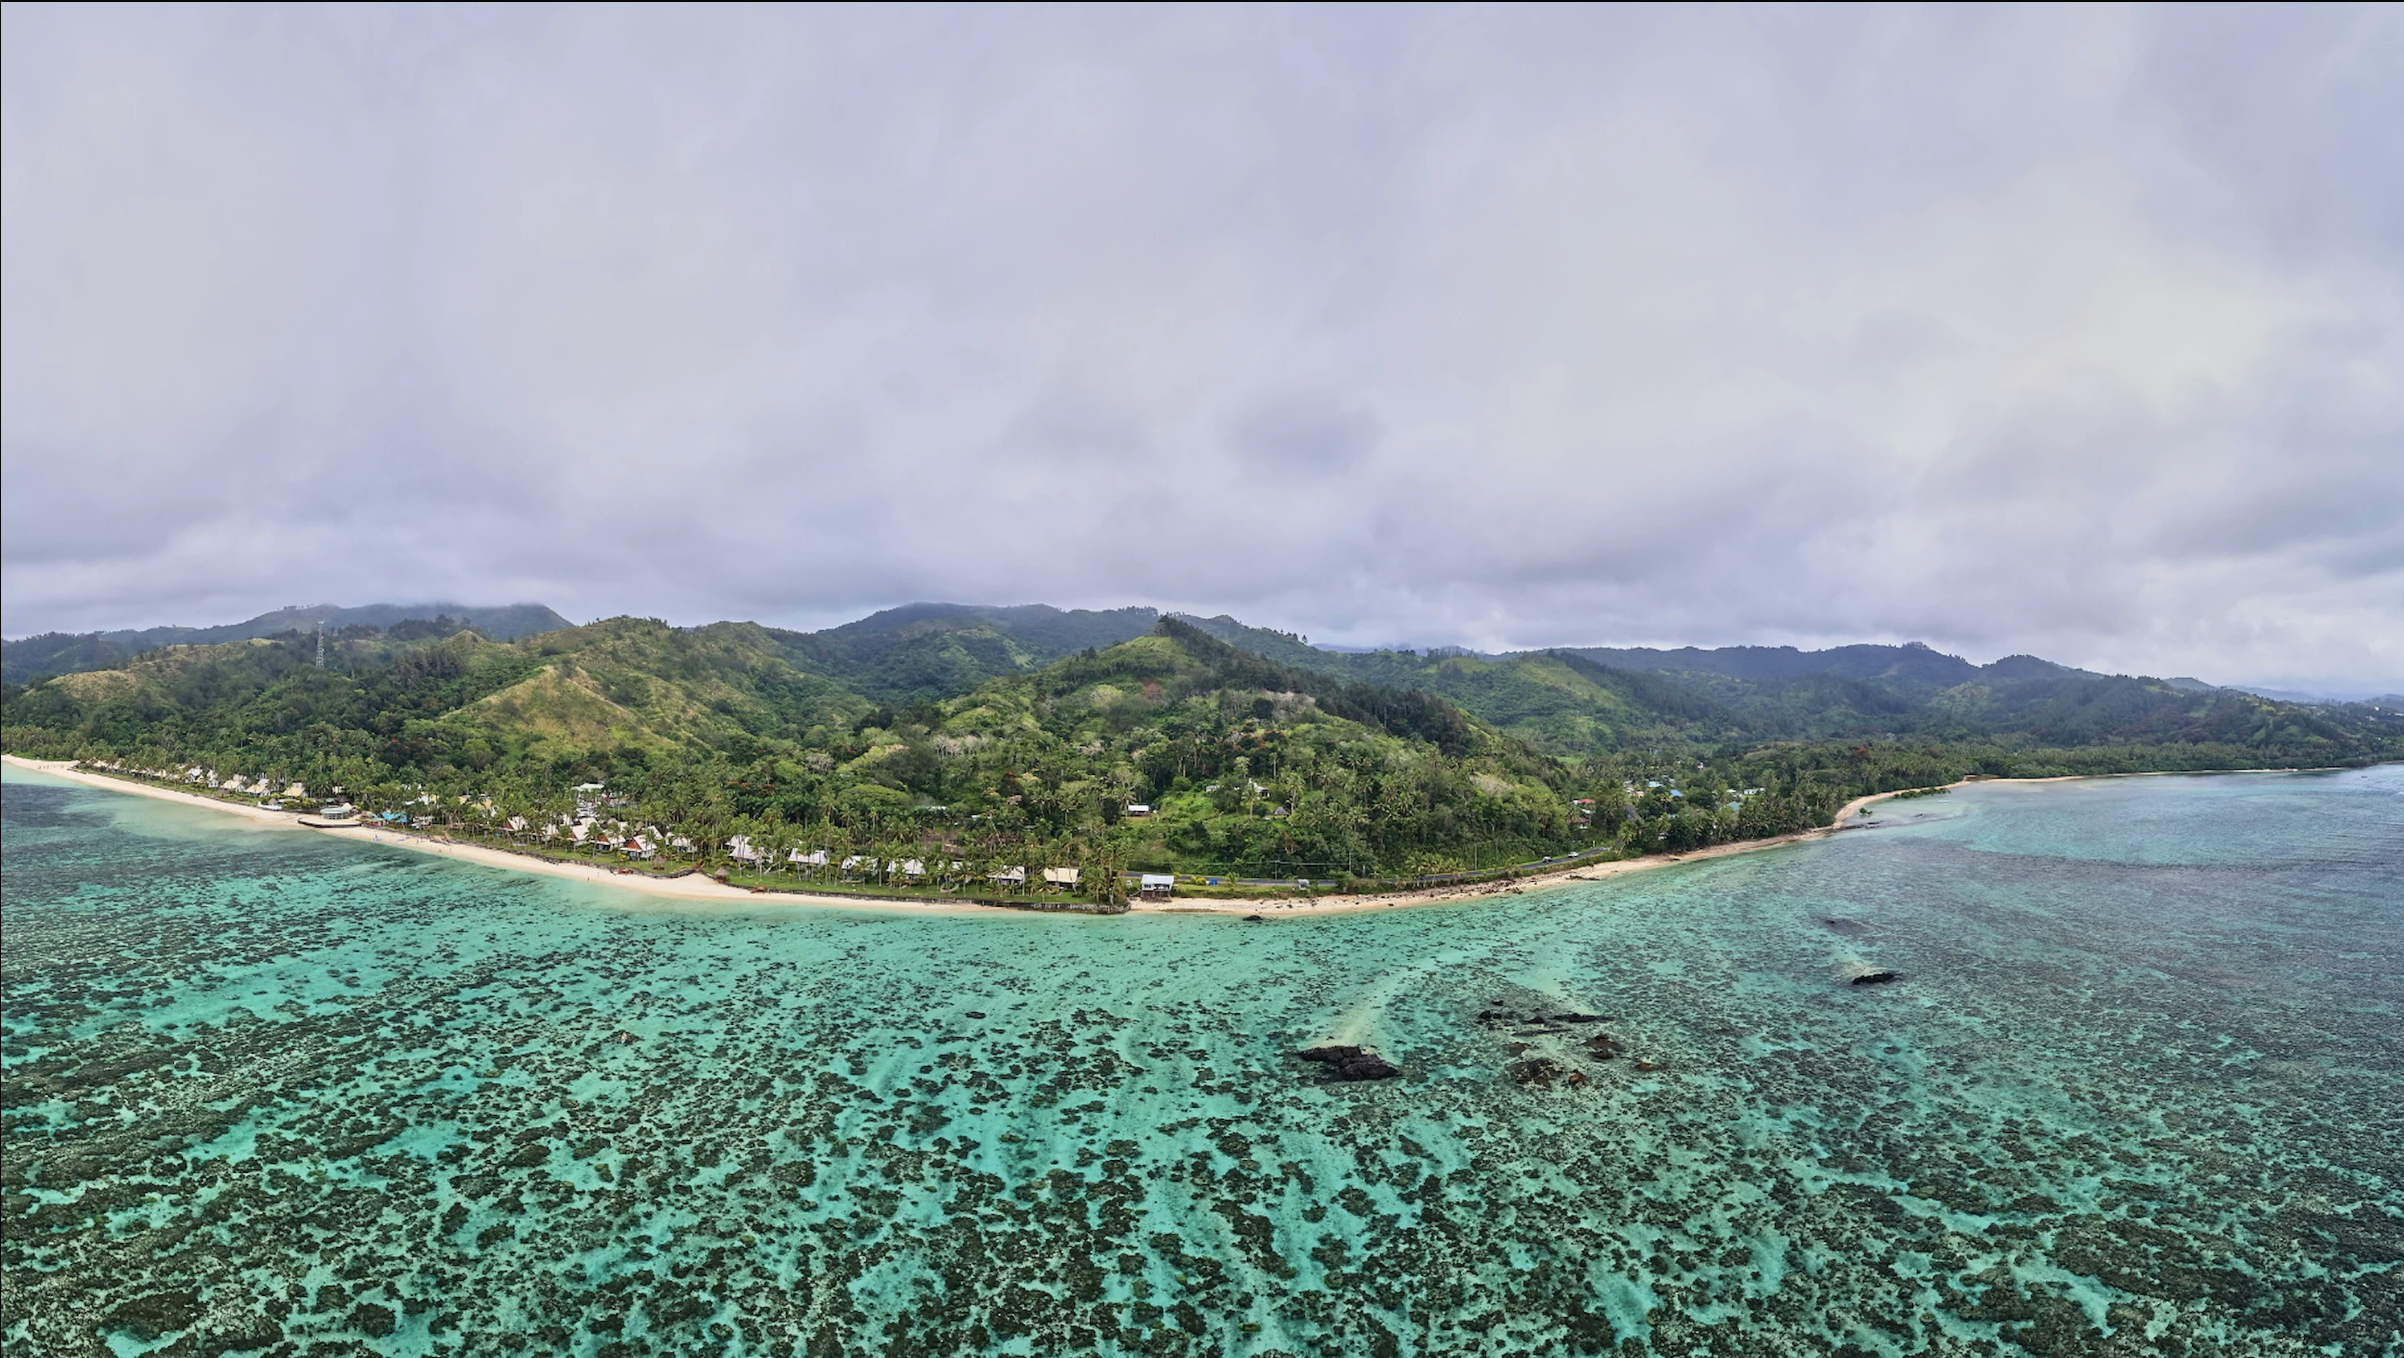 Viti Levu, Fiji. Photo: Ocean Image Bank